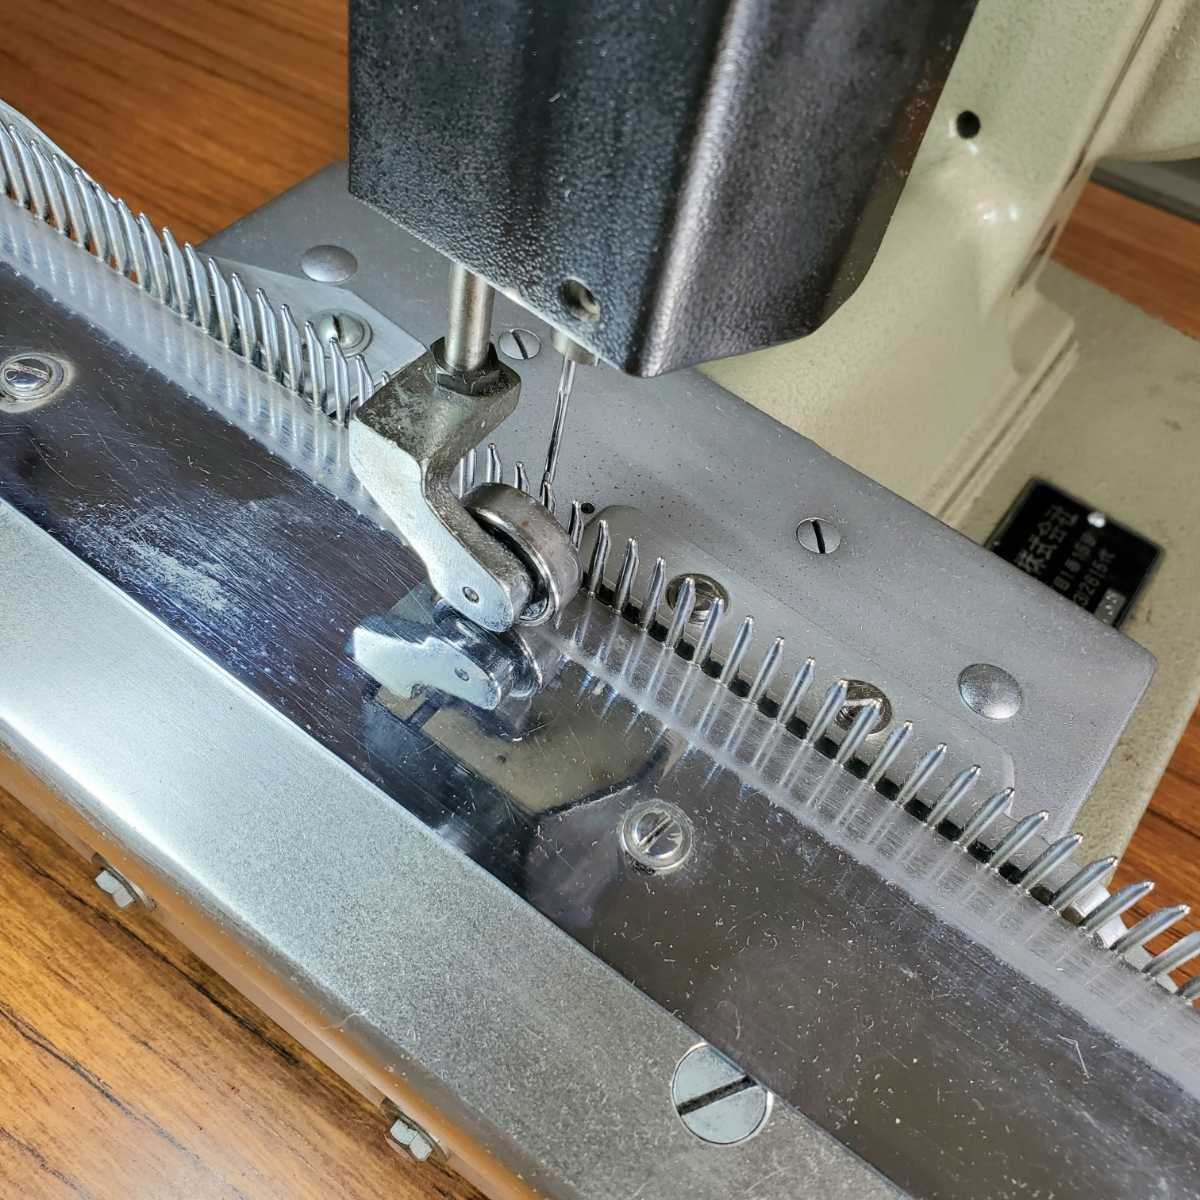 編み機 編機 編み物 綴じ器 リンキング マルサンリンキング(マルイ繊維機械製)CP102 5ゲージ(針間隔約5㎜) 整備済み品